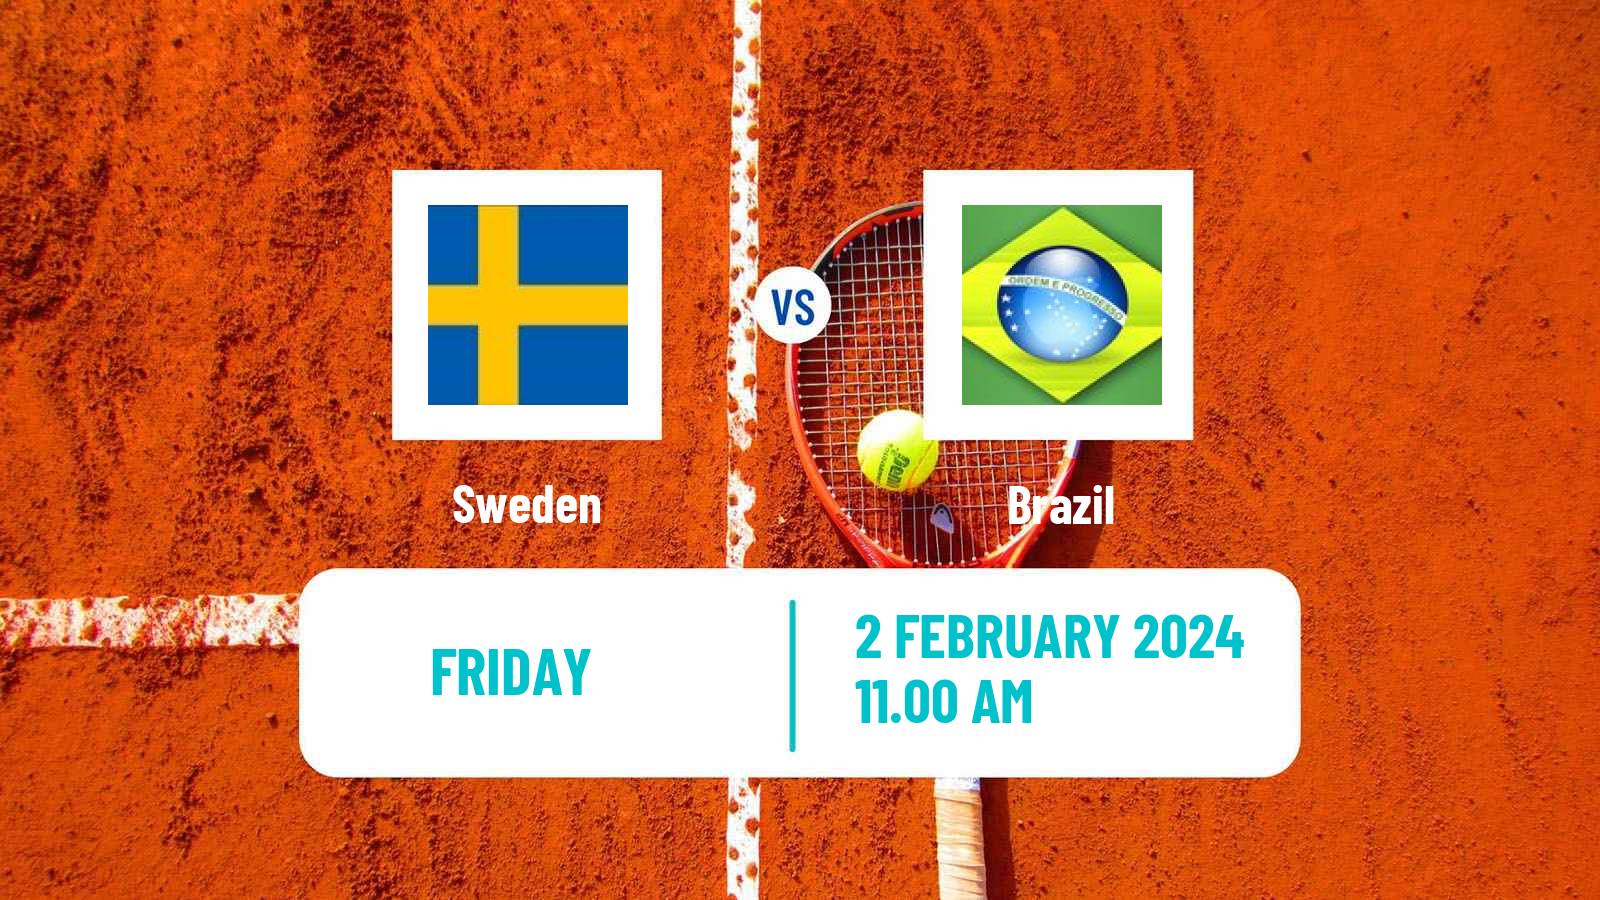 Tennis Davis Cup - World Group Teams Sweden - Brazil